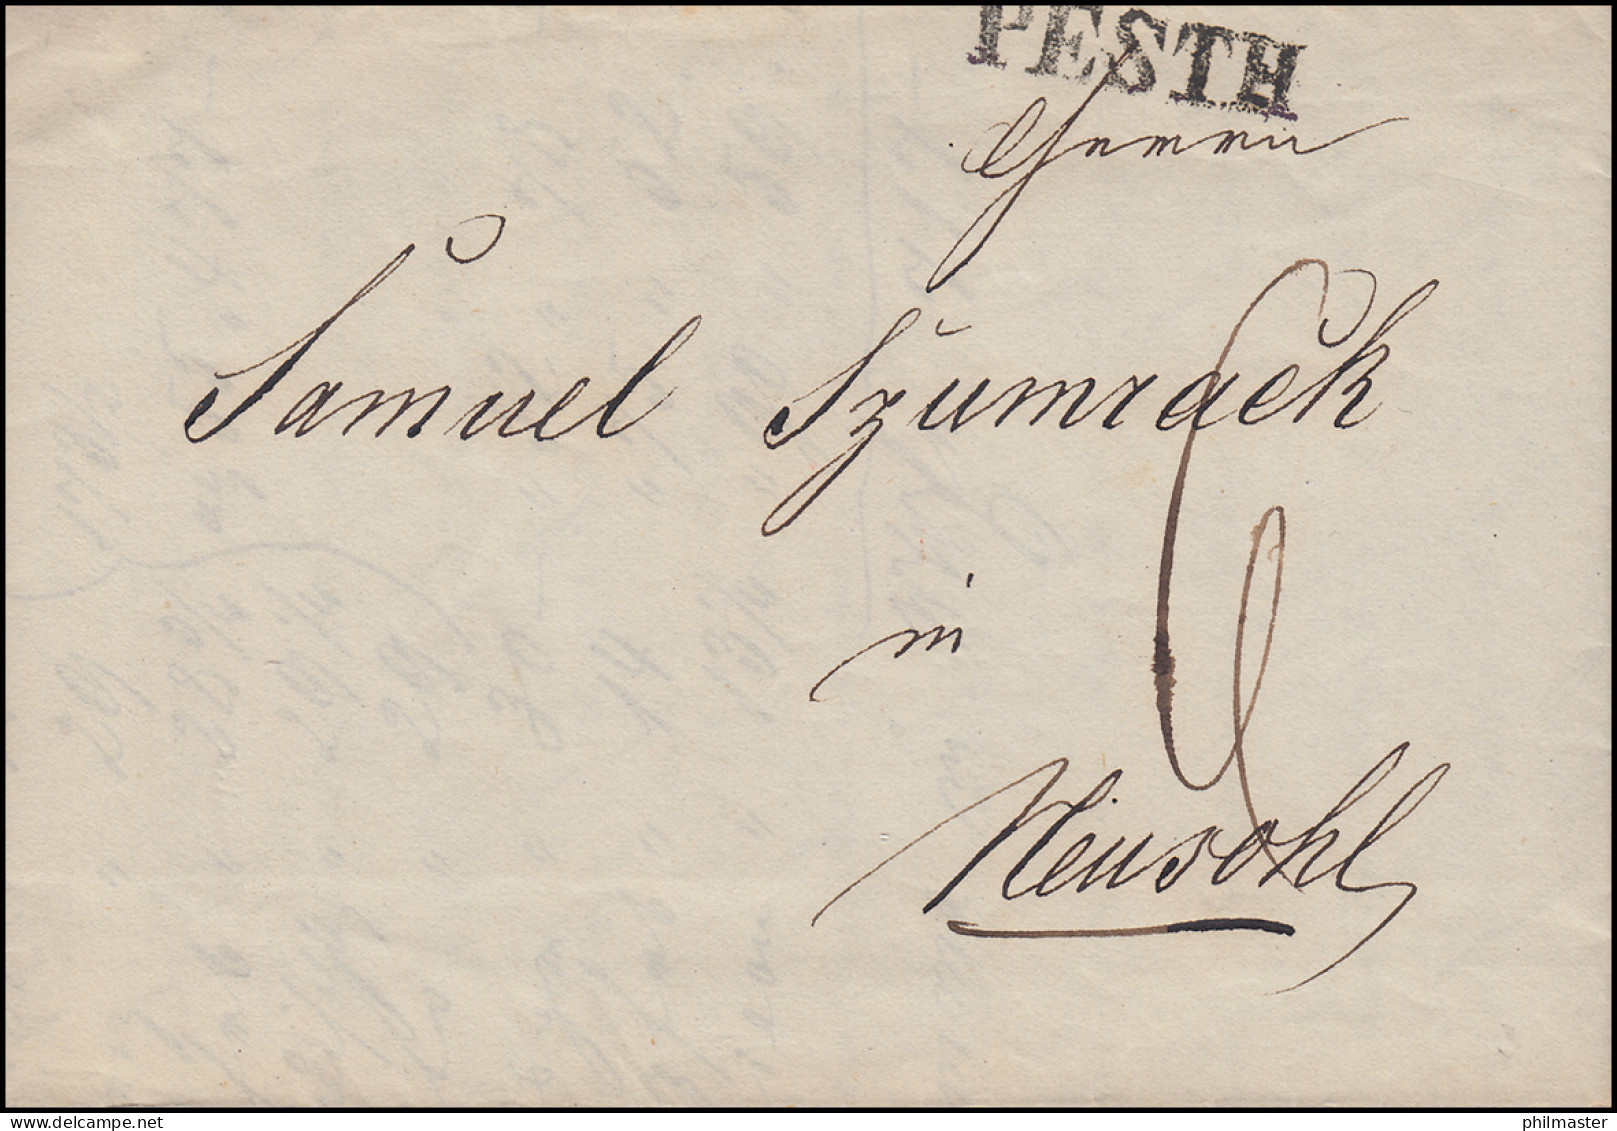 Ungarn Vorphilatelie Handgeschr. Rechnung Von PESTH 15.11.1846 Nach NEUSOHL - ...-1867 Préphilatélie